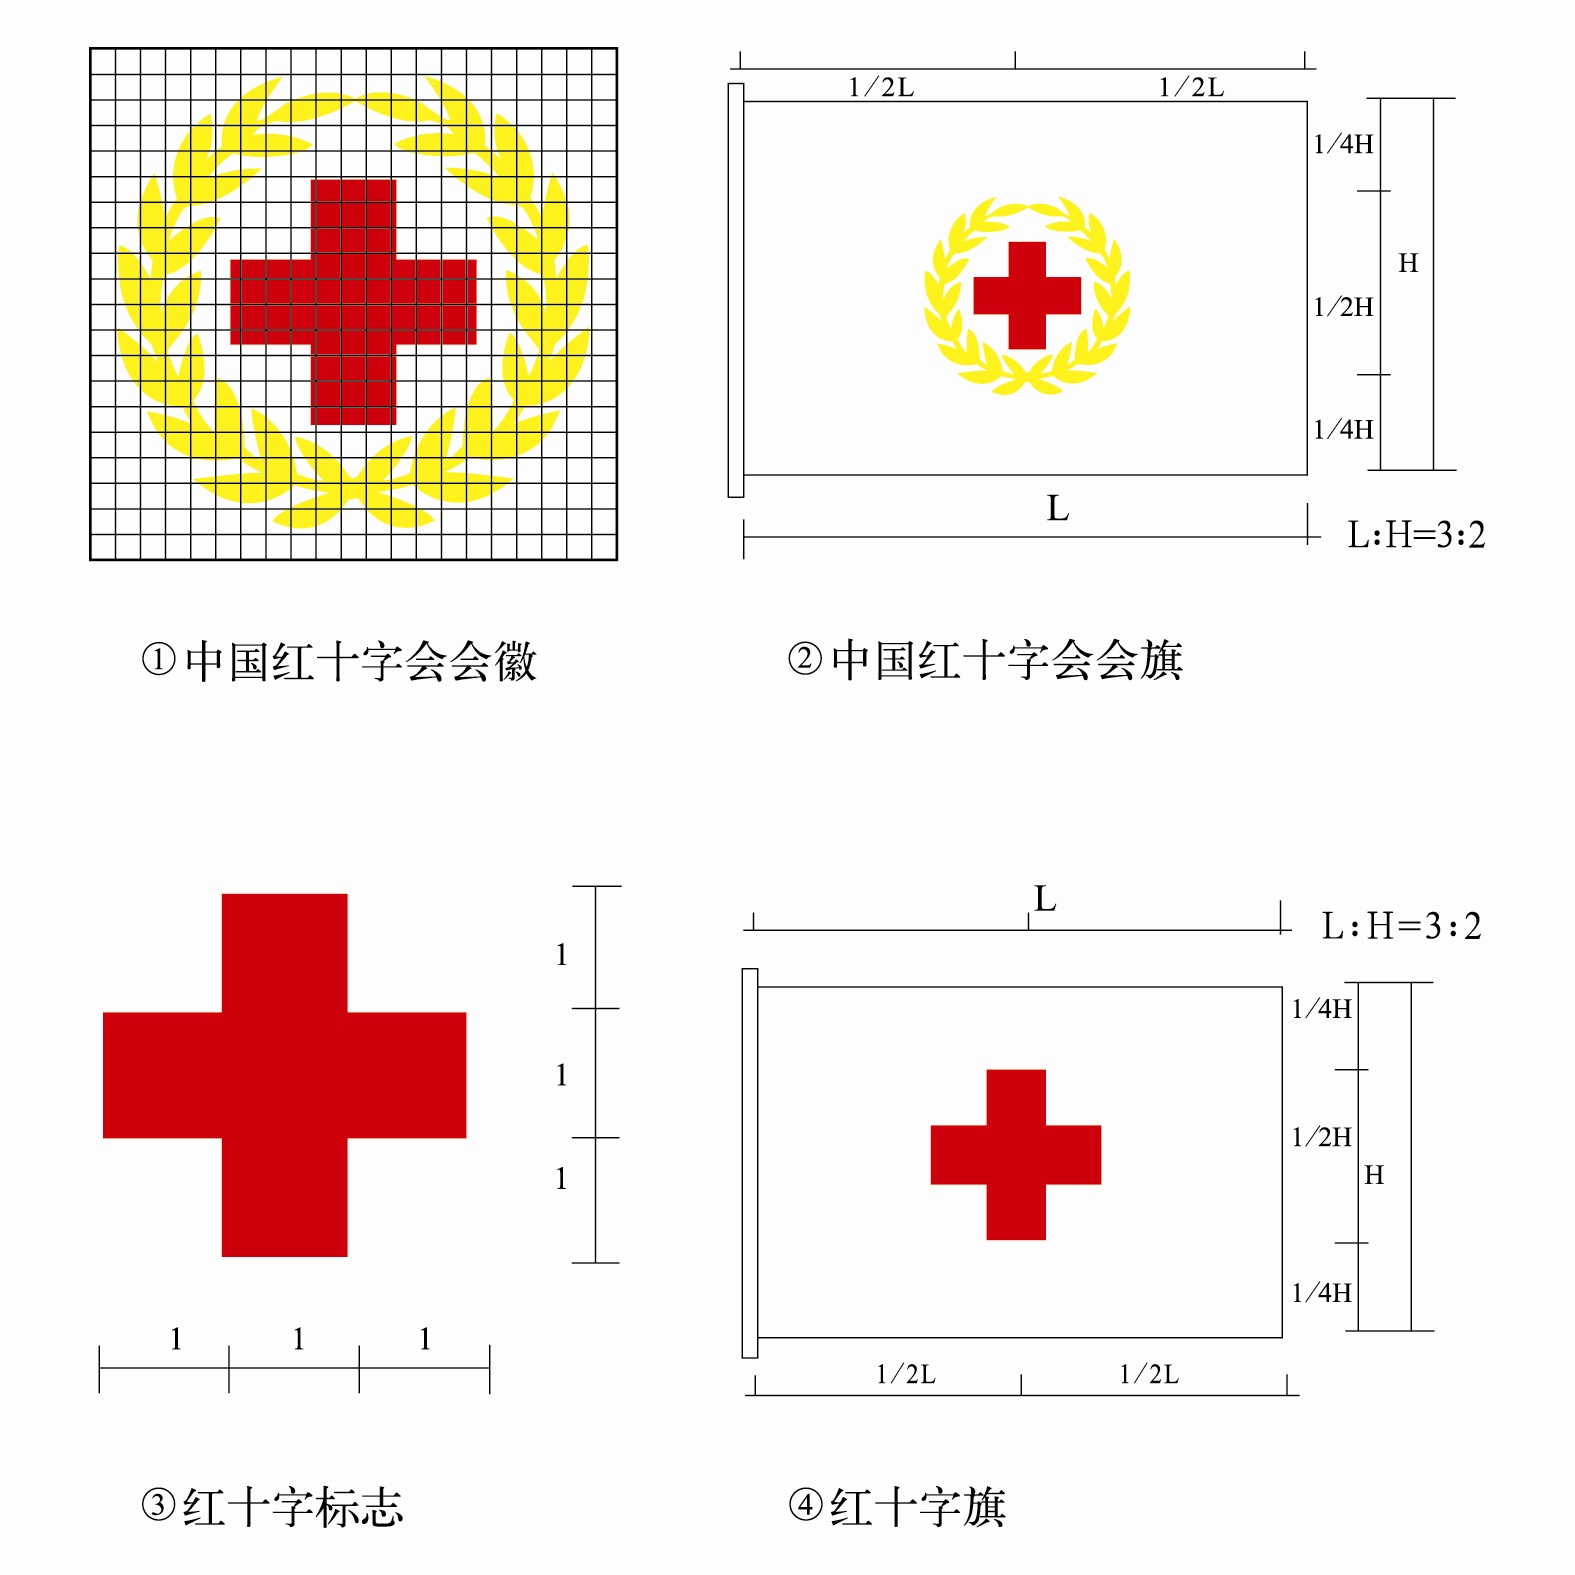 中國紅十字會